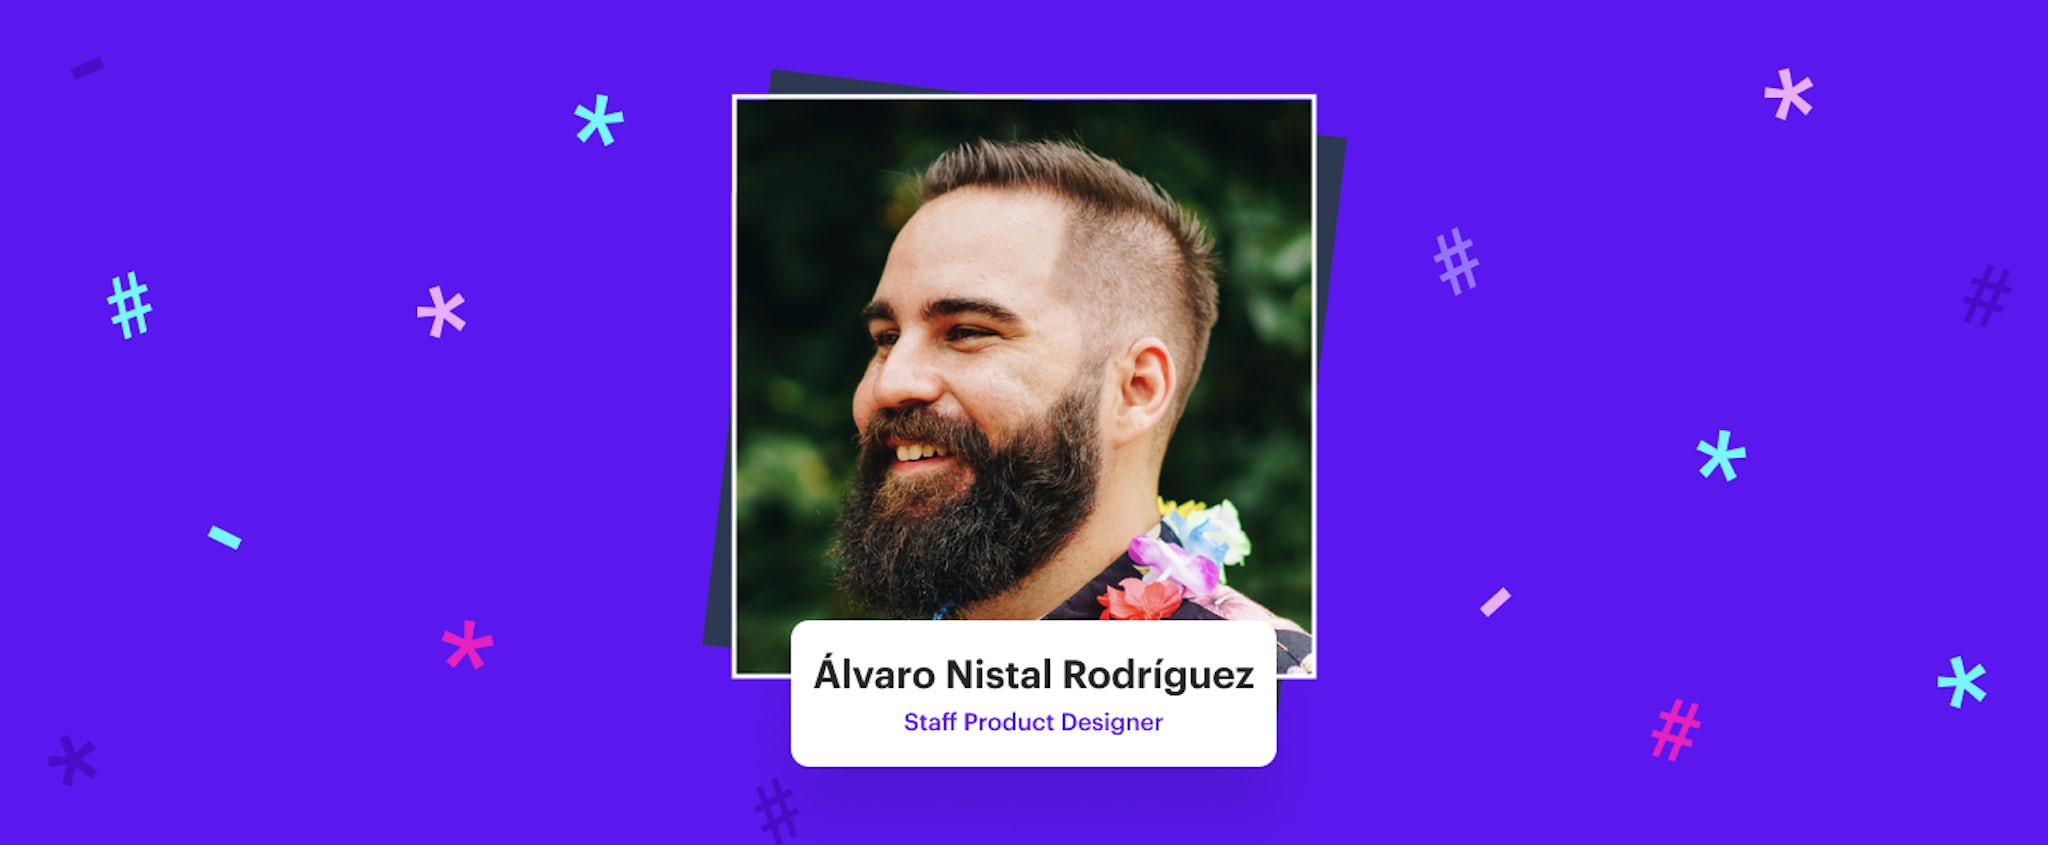 Employee Profile: Álvaro Nistal Rodríguez